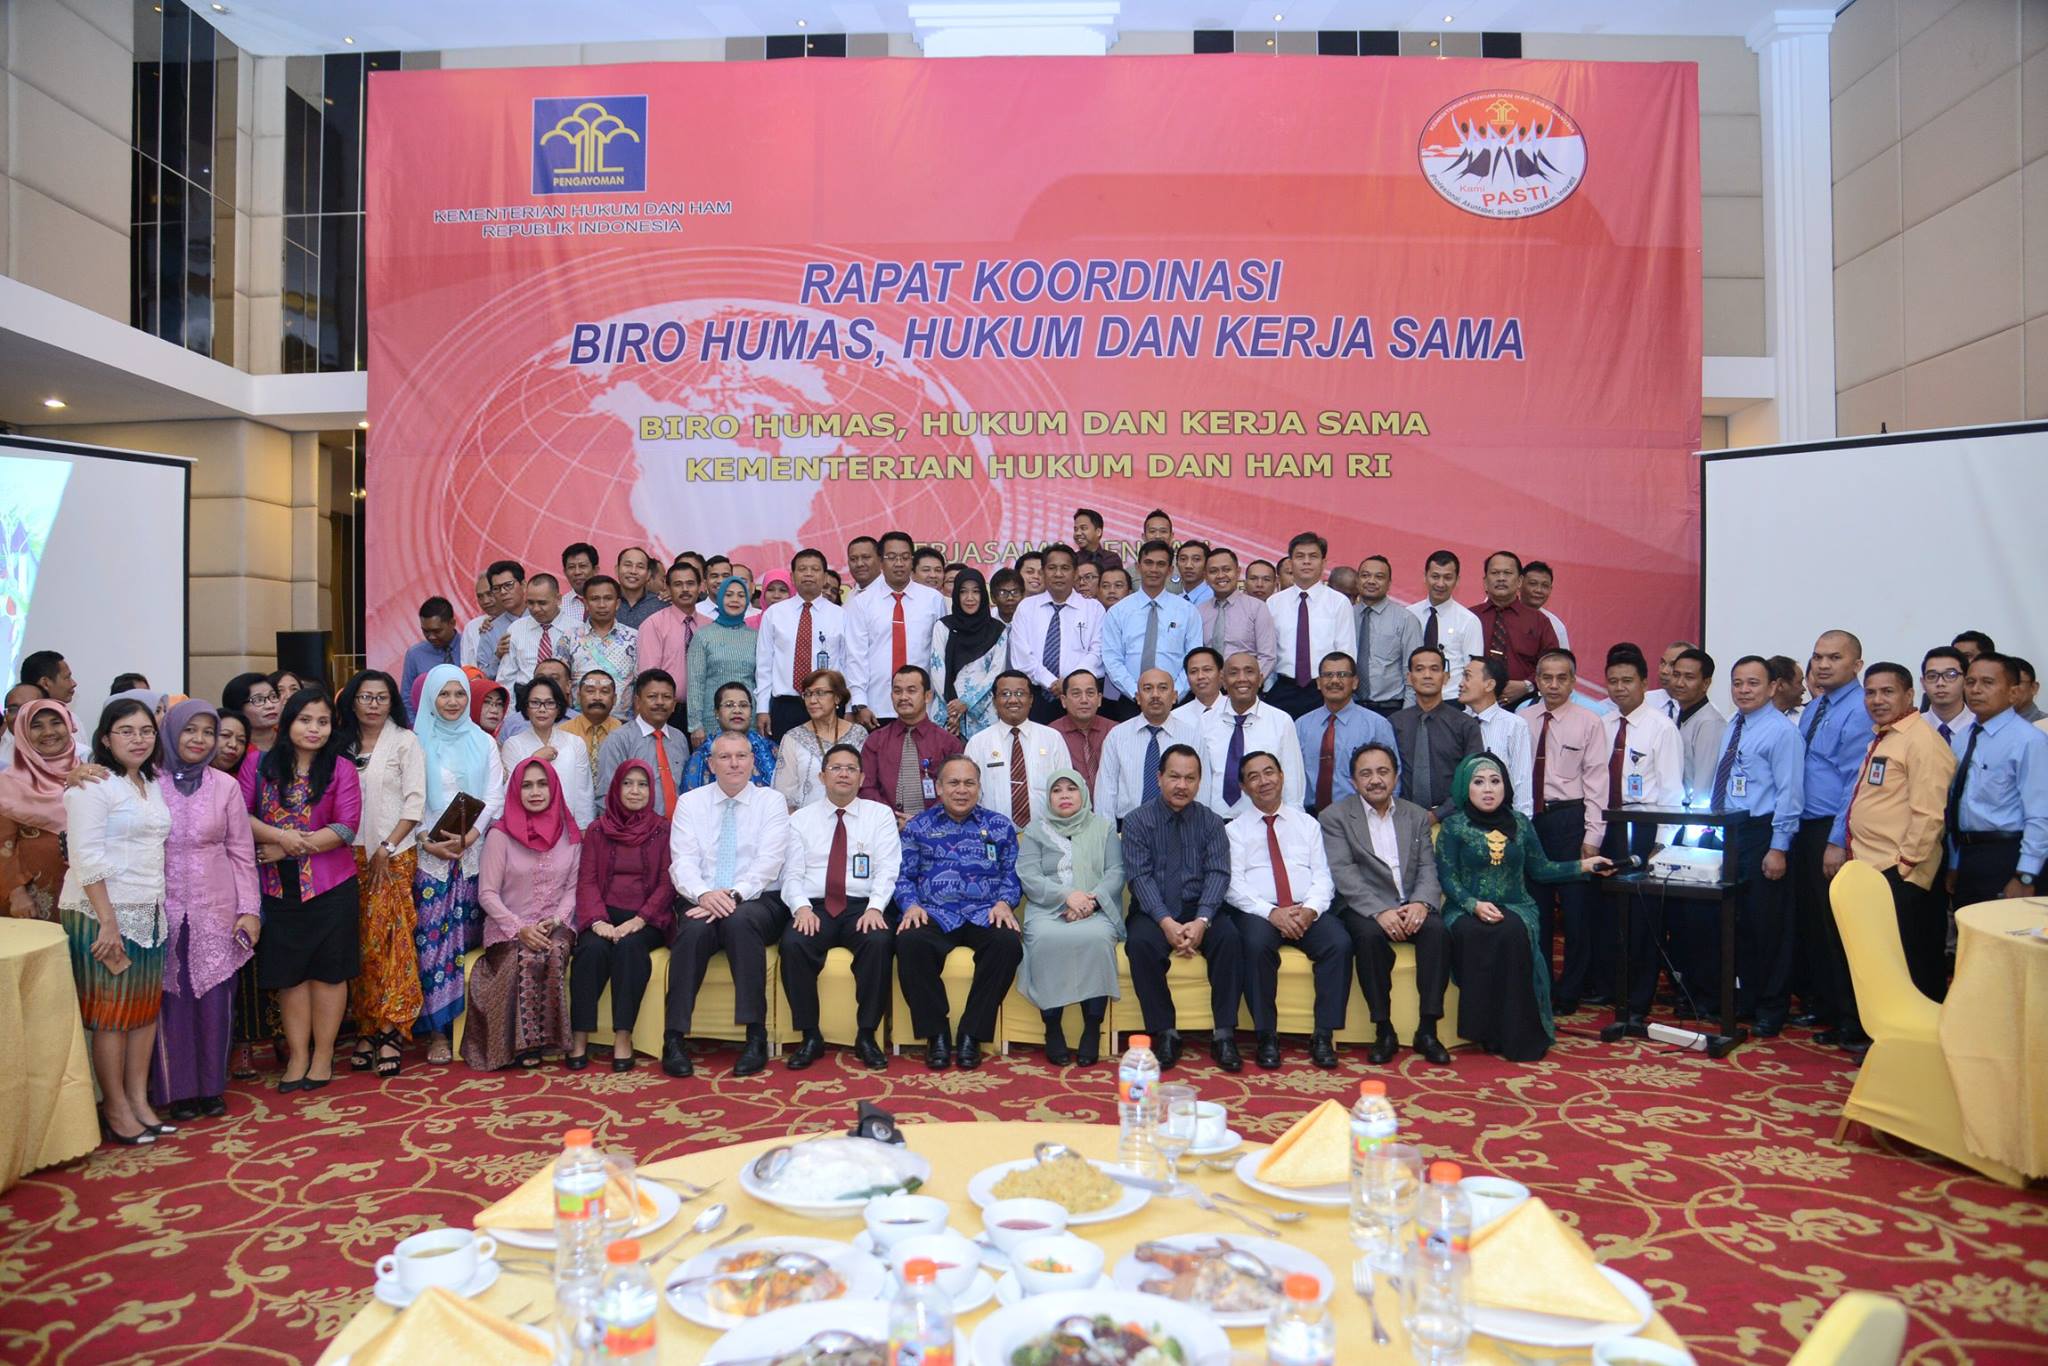 Rapat Koordinasi Biro Humas, Hukum dan Kerjasama Kemenkumham, Kemenkumham, FNF Indonesia